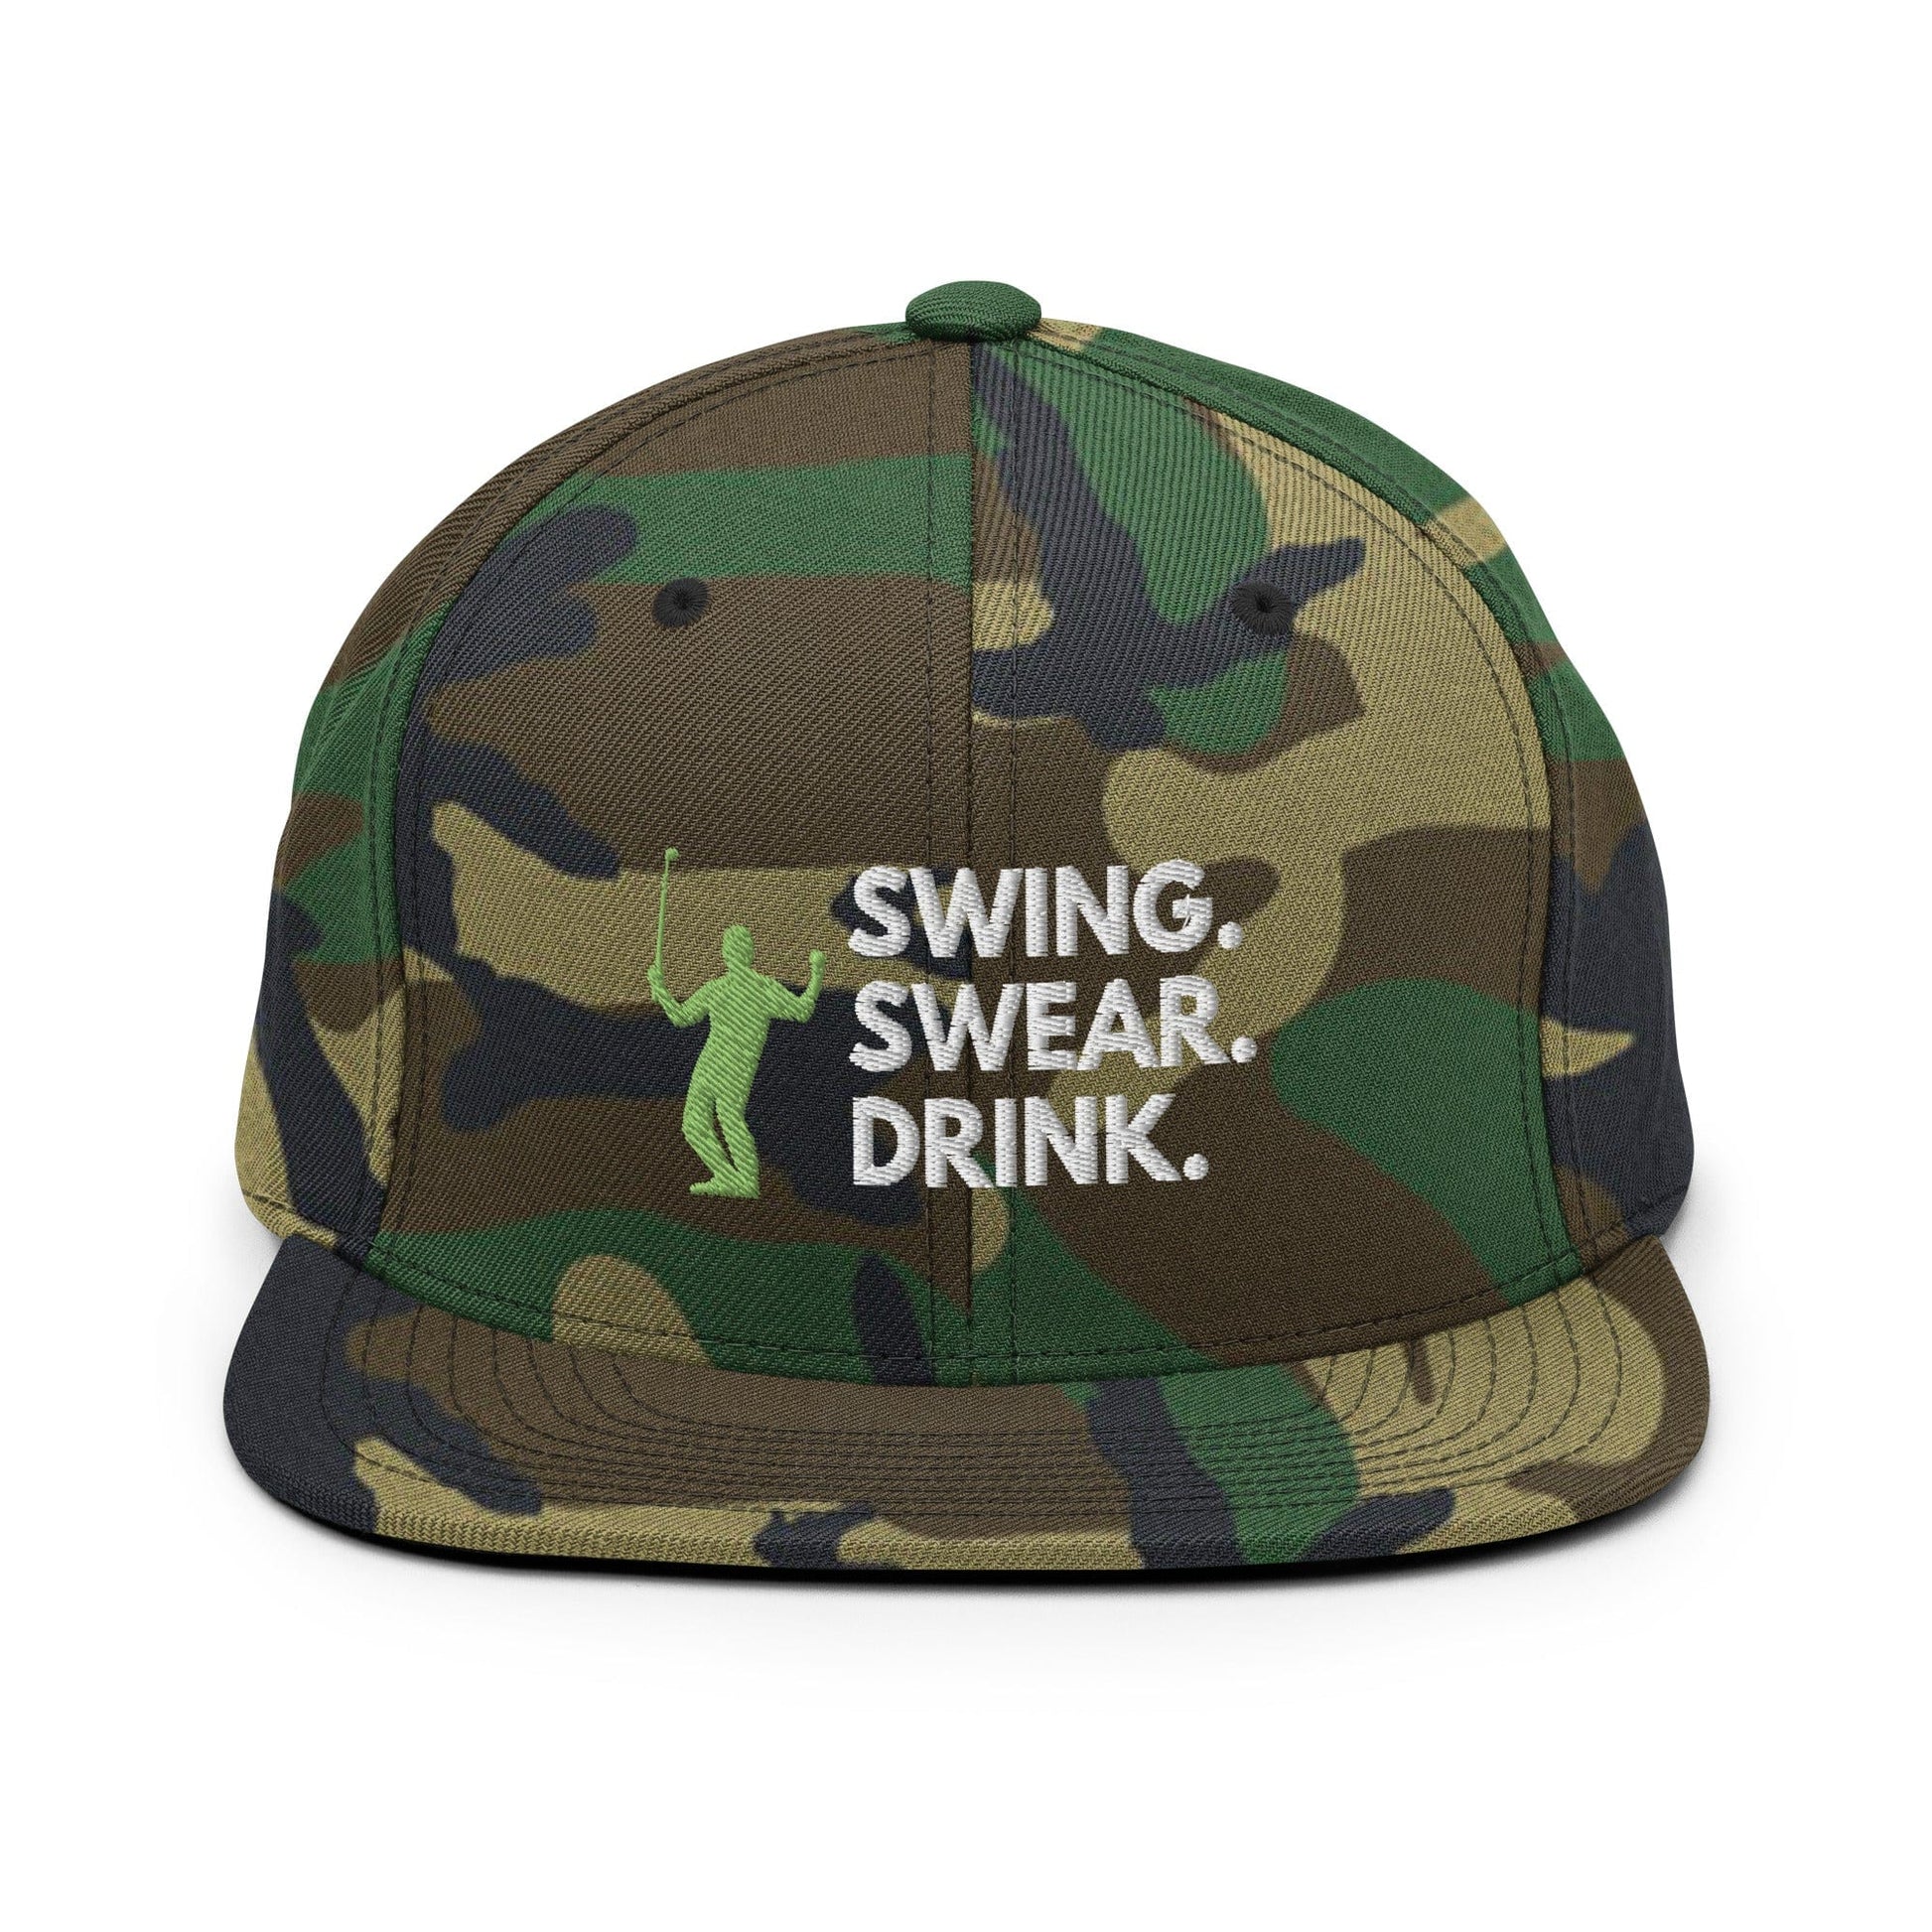 Funny Golfer Gifts  Snapback Hat Green Camo Swing. Swear. Drink Snapback Hat